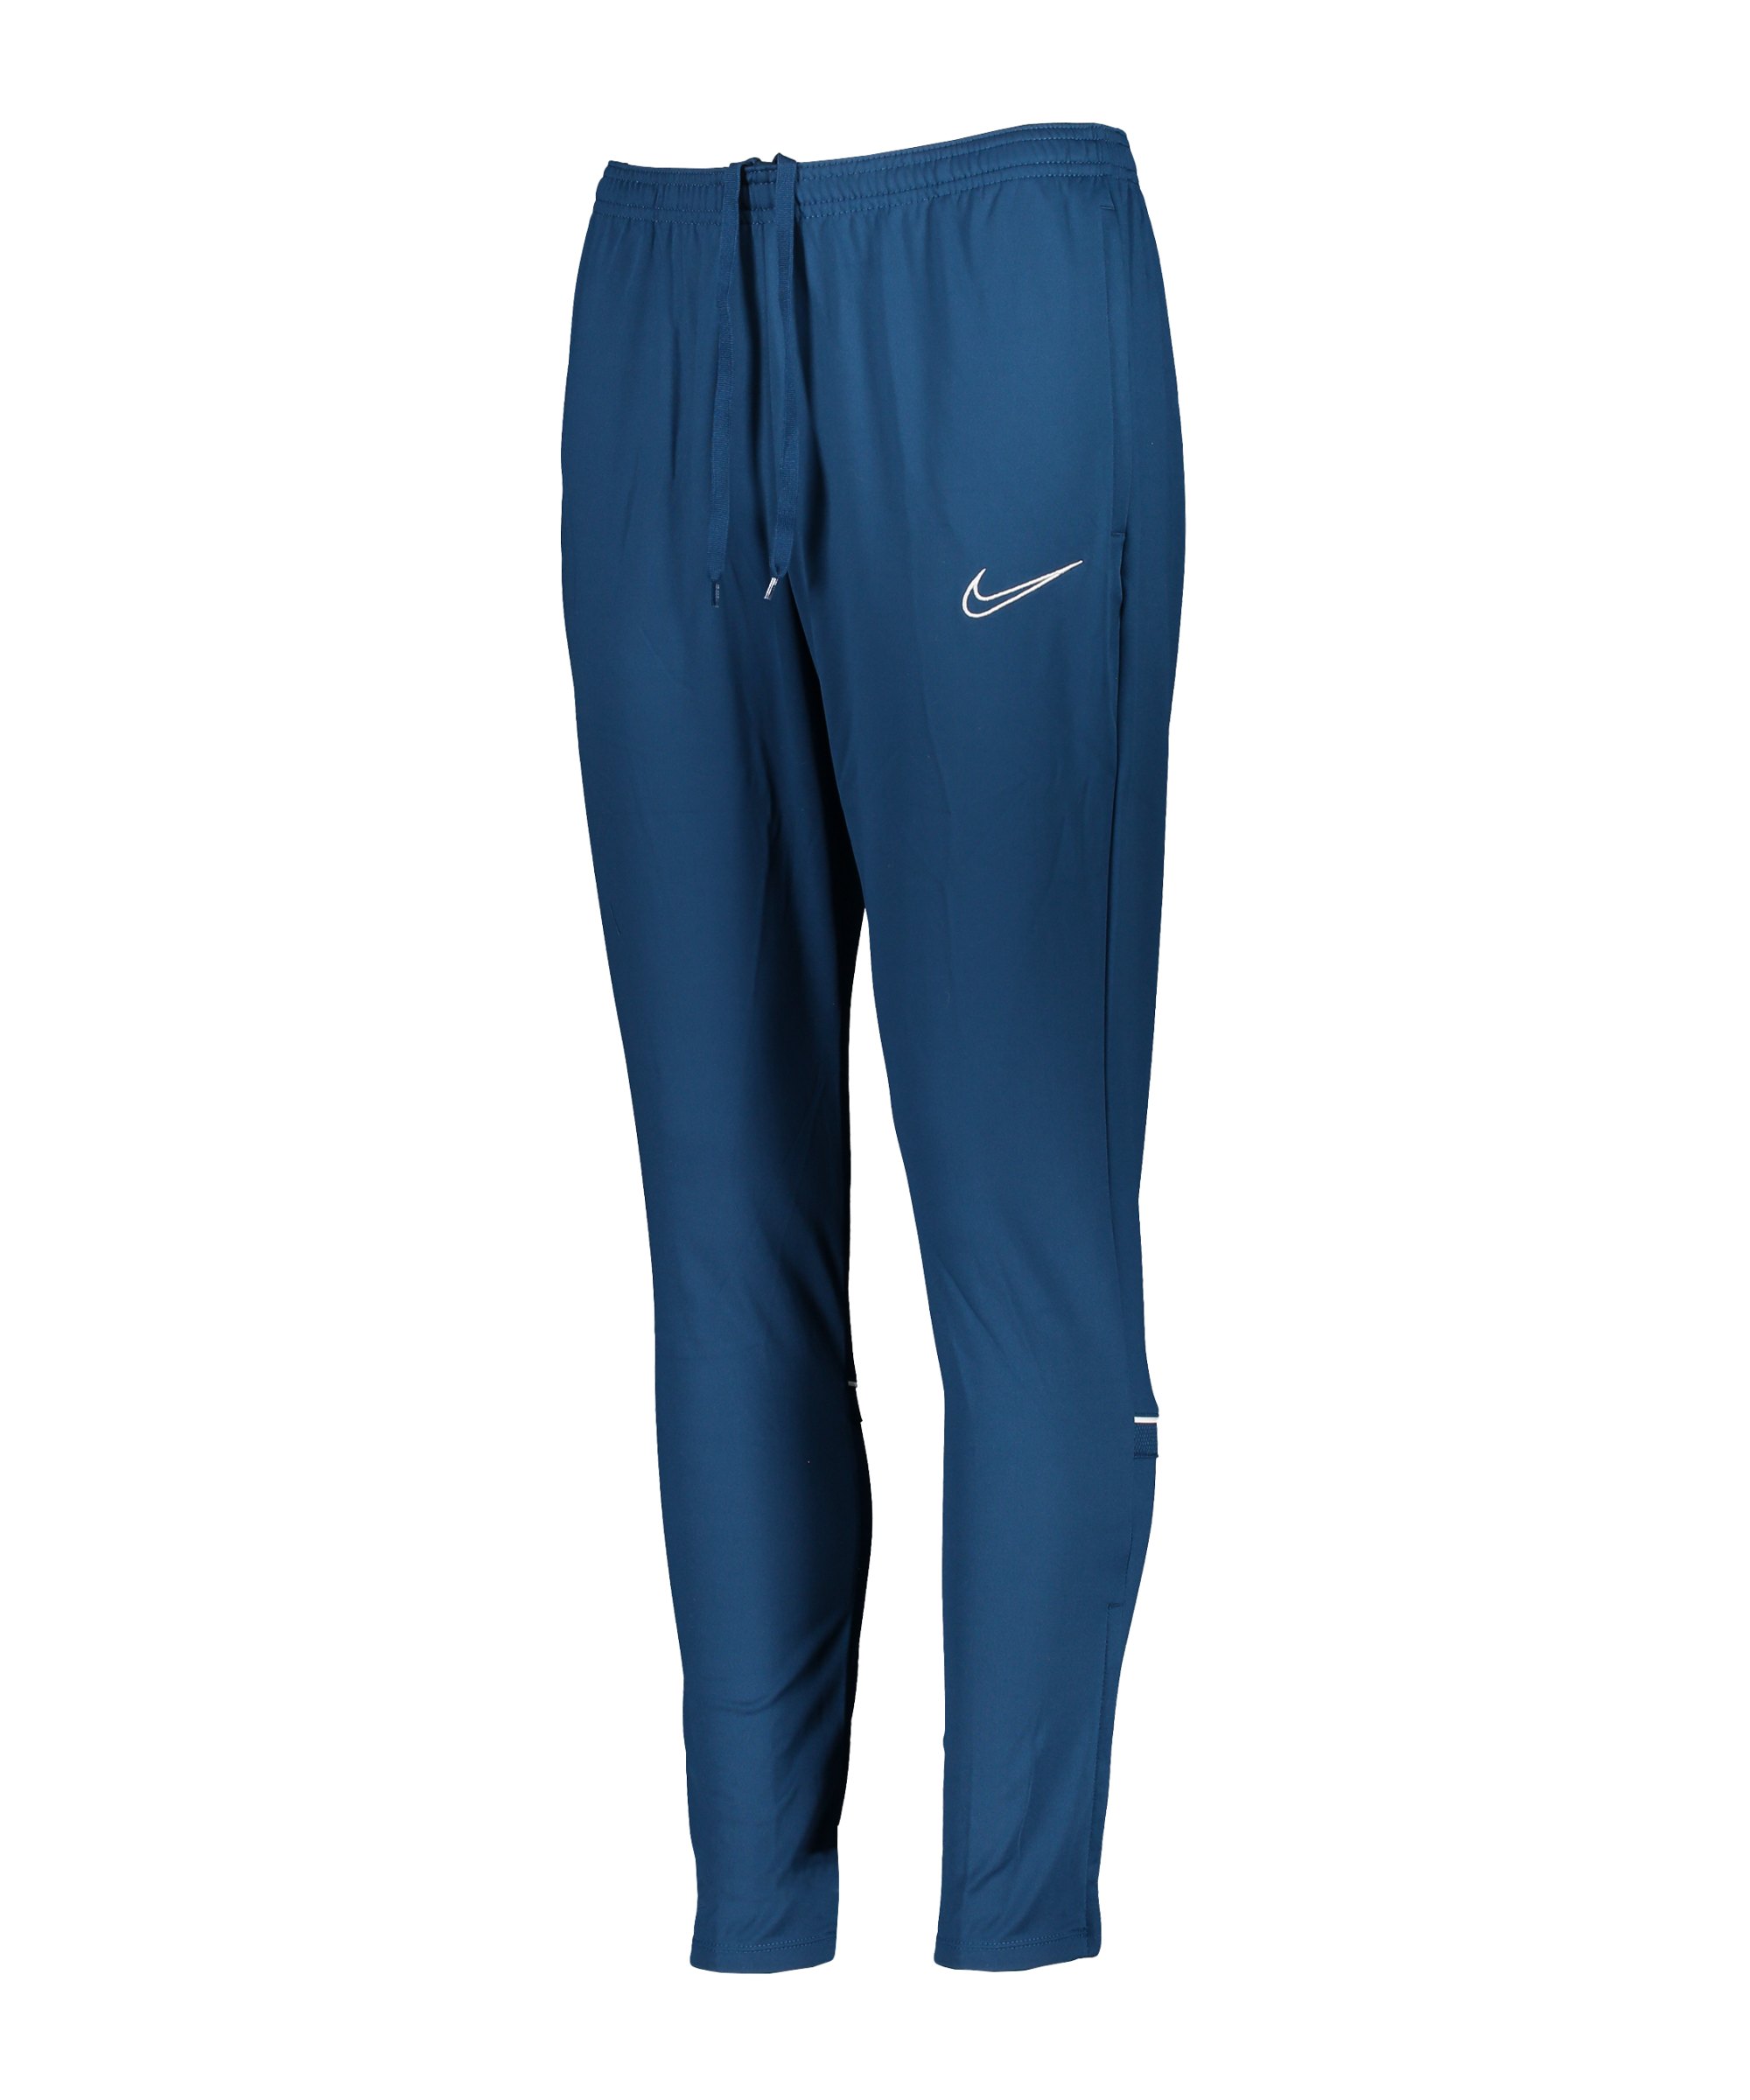 Nike Academy Trainingshose Damen Blau Weiss F460 - blau